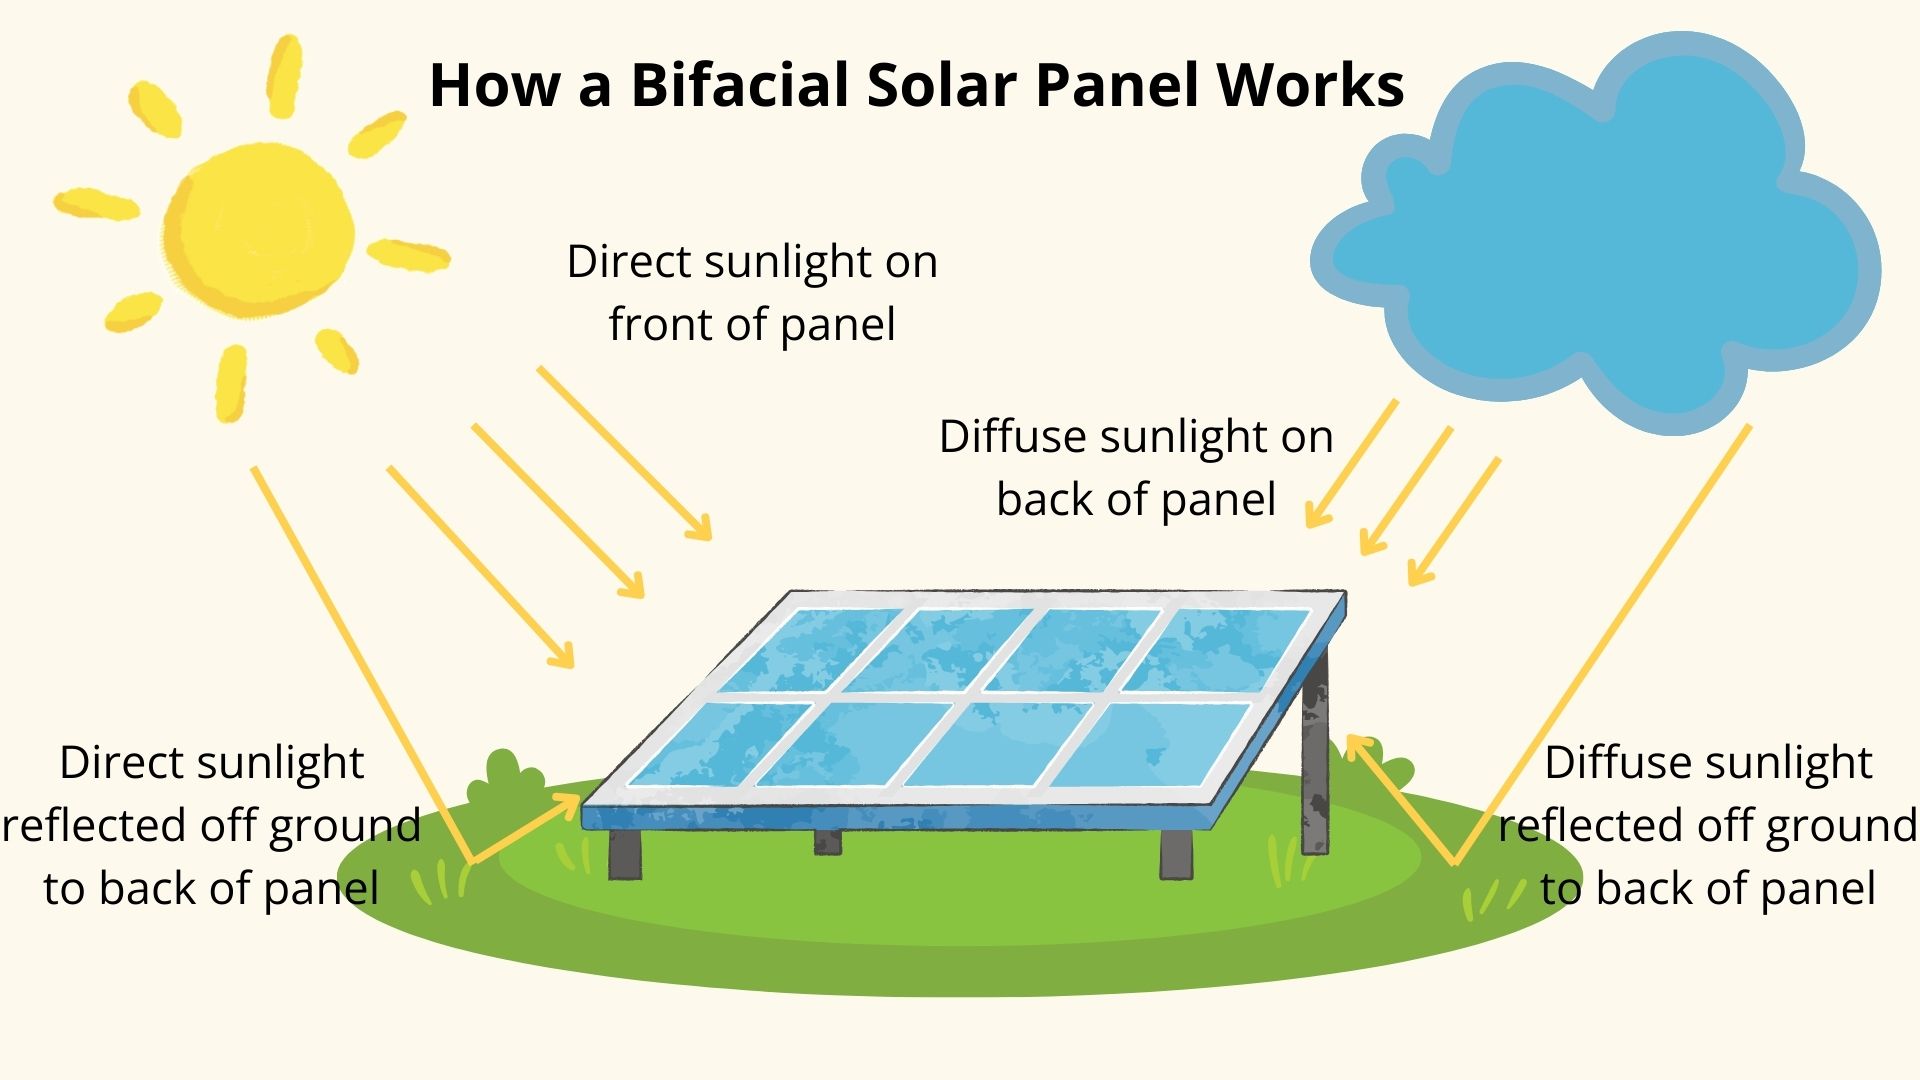 How Do Bifacial Solar Panels Work